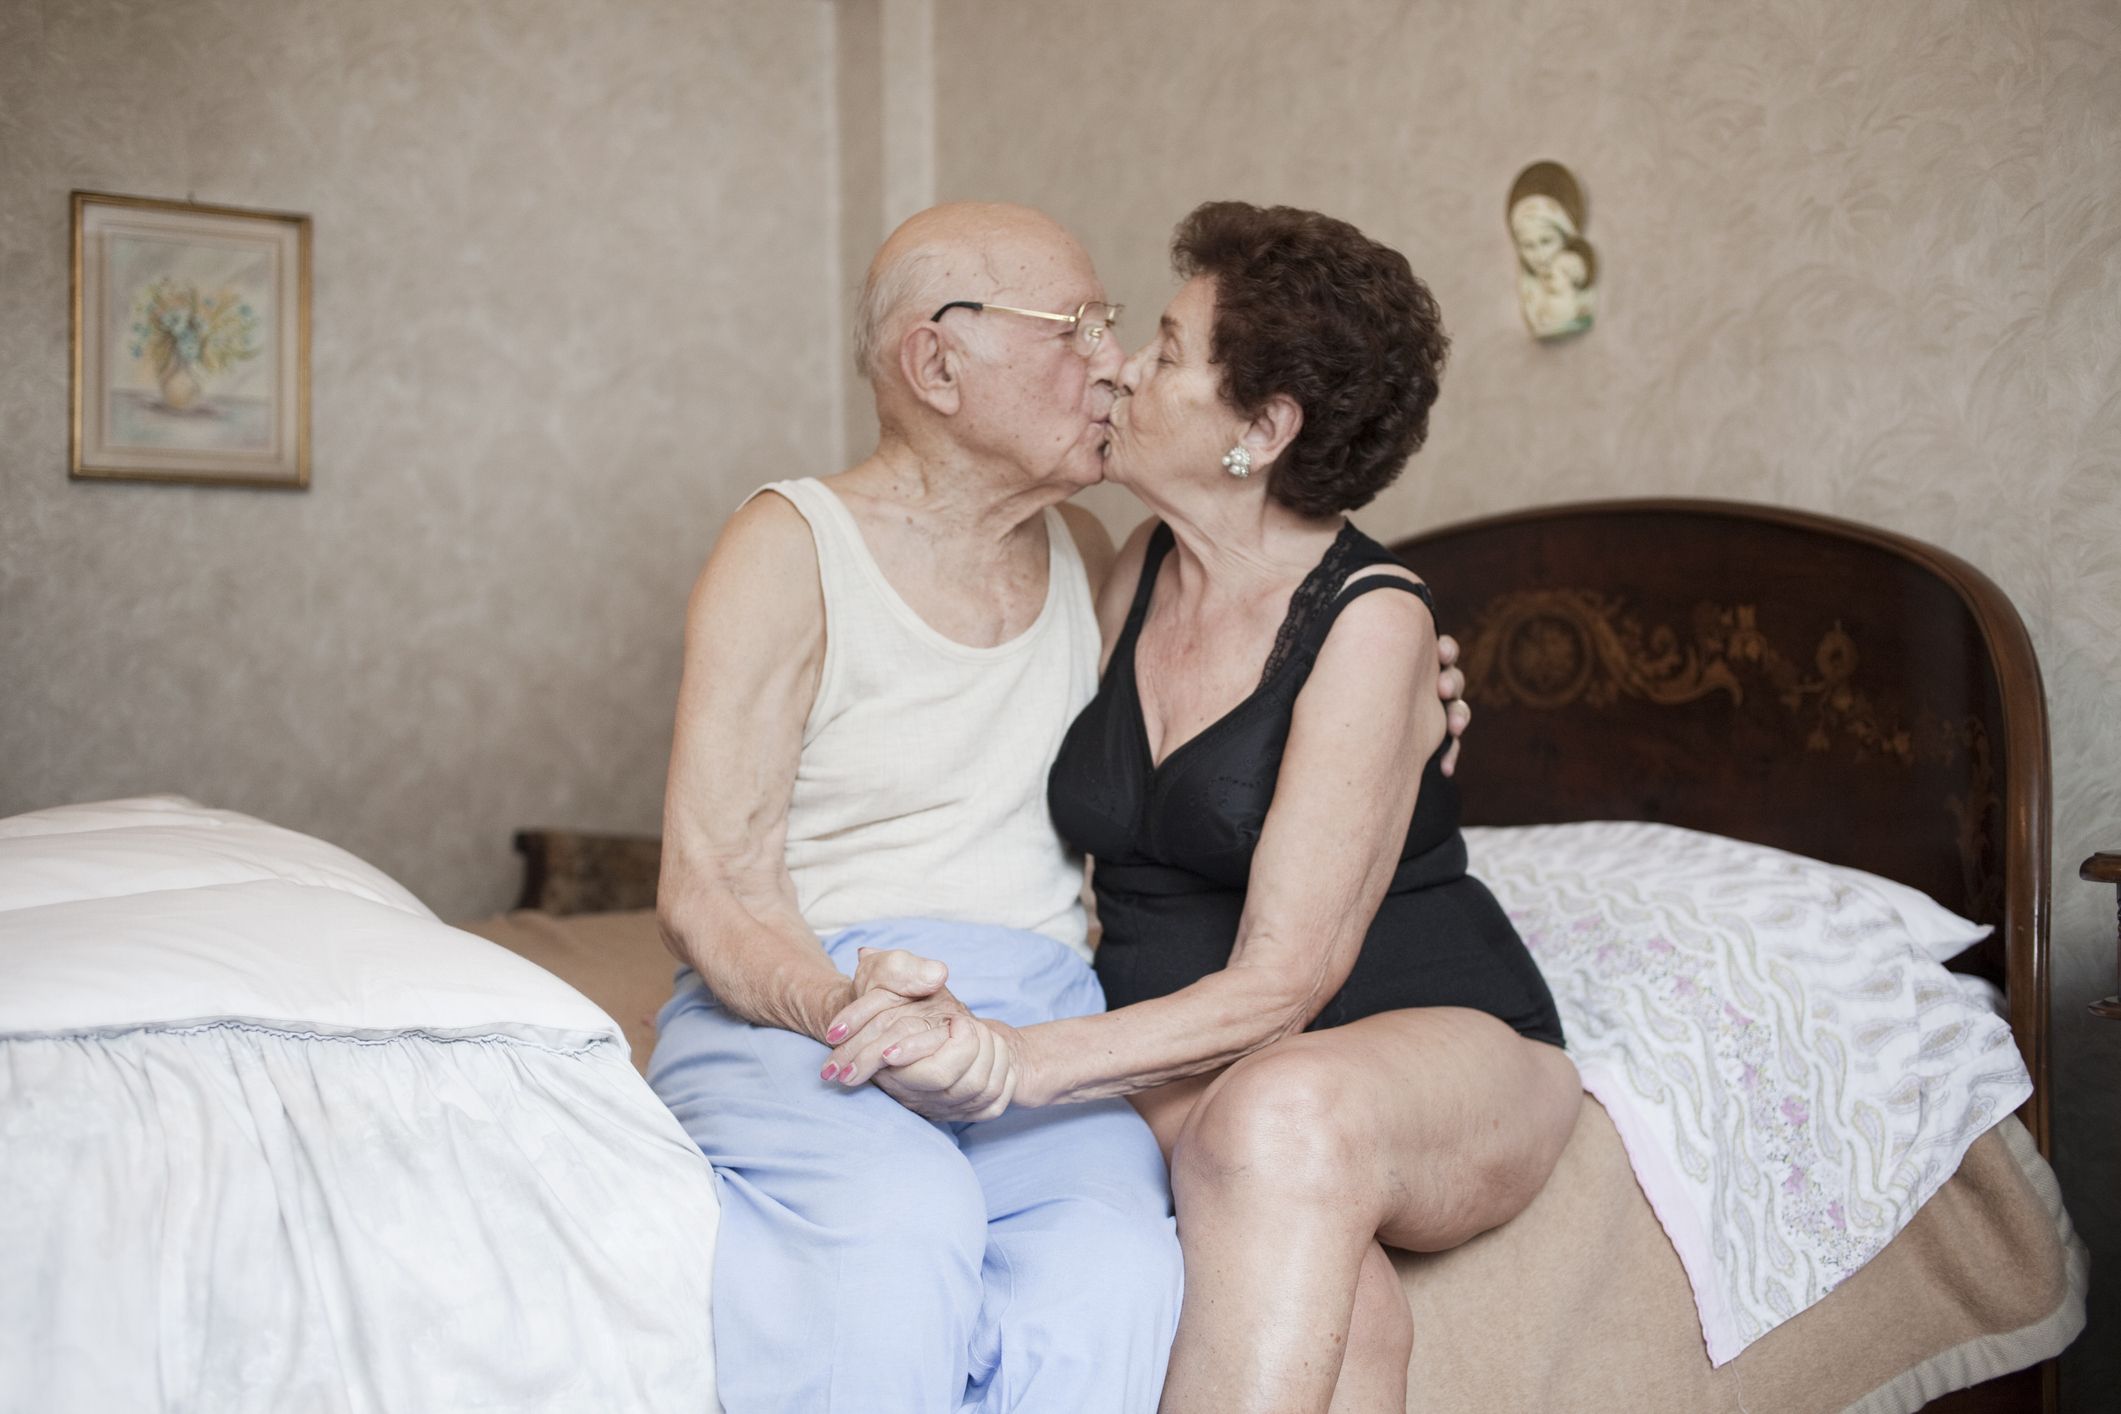 sex between unmarried elderlypeople